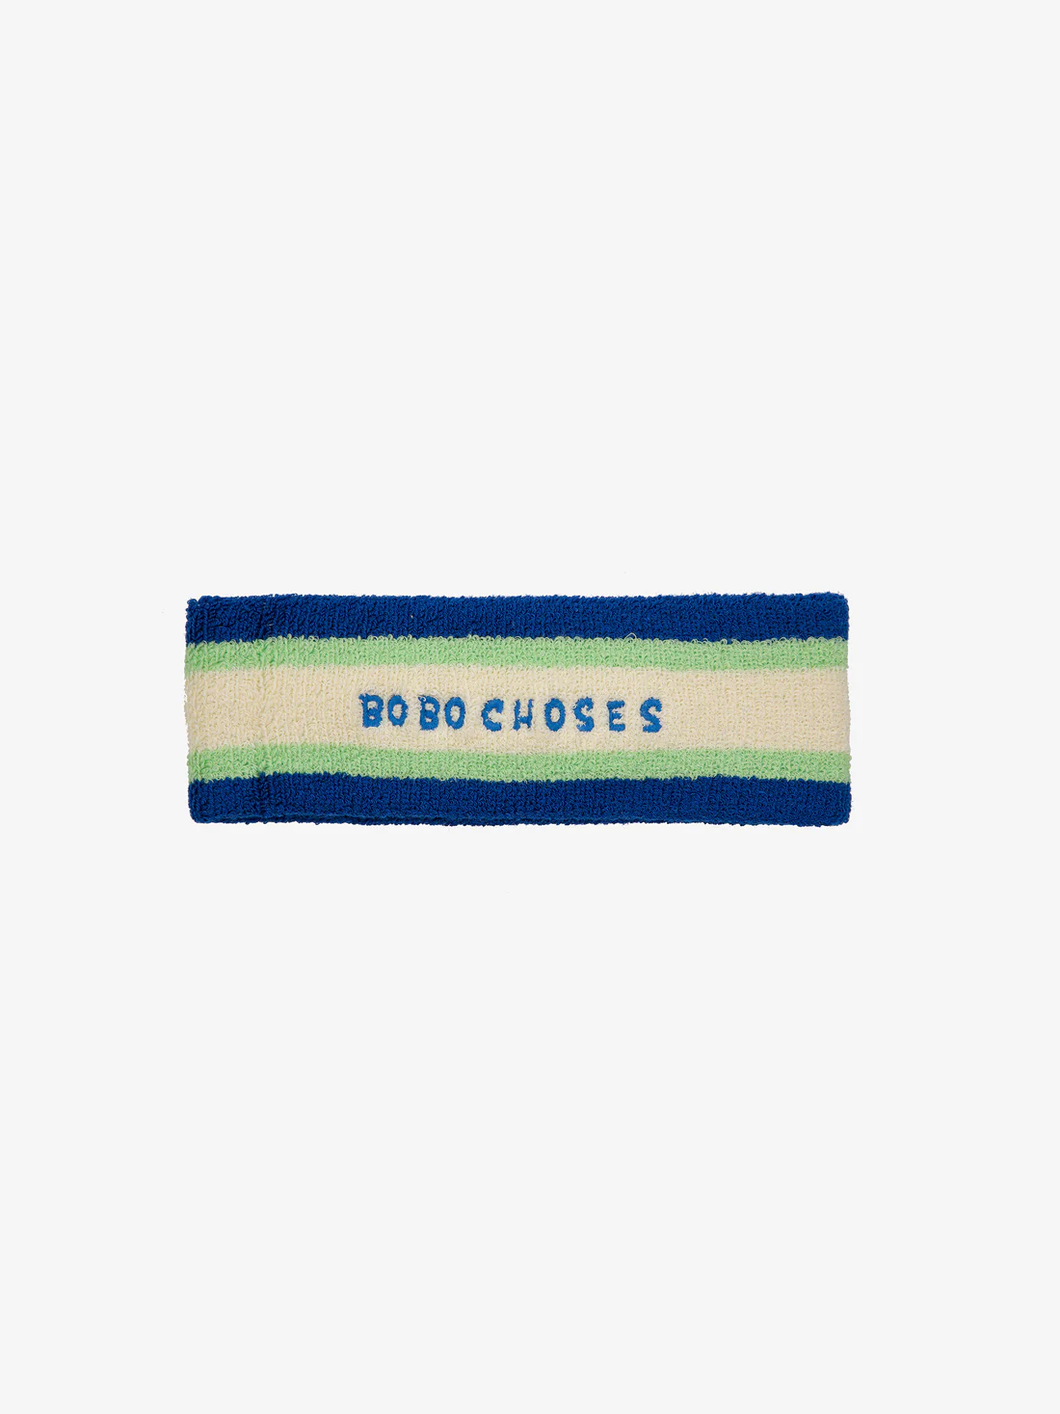 Copy of Bobo Choses Blue Towel Headband - 52cm, 54cm